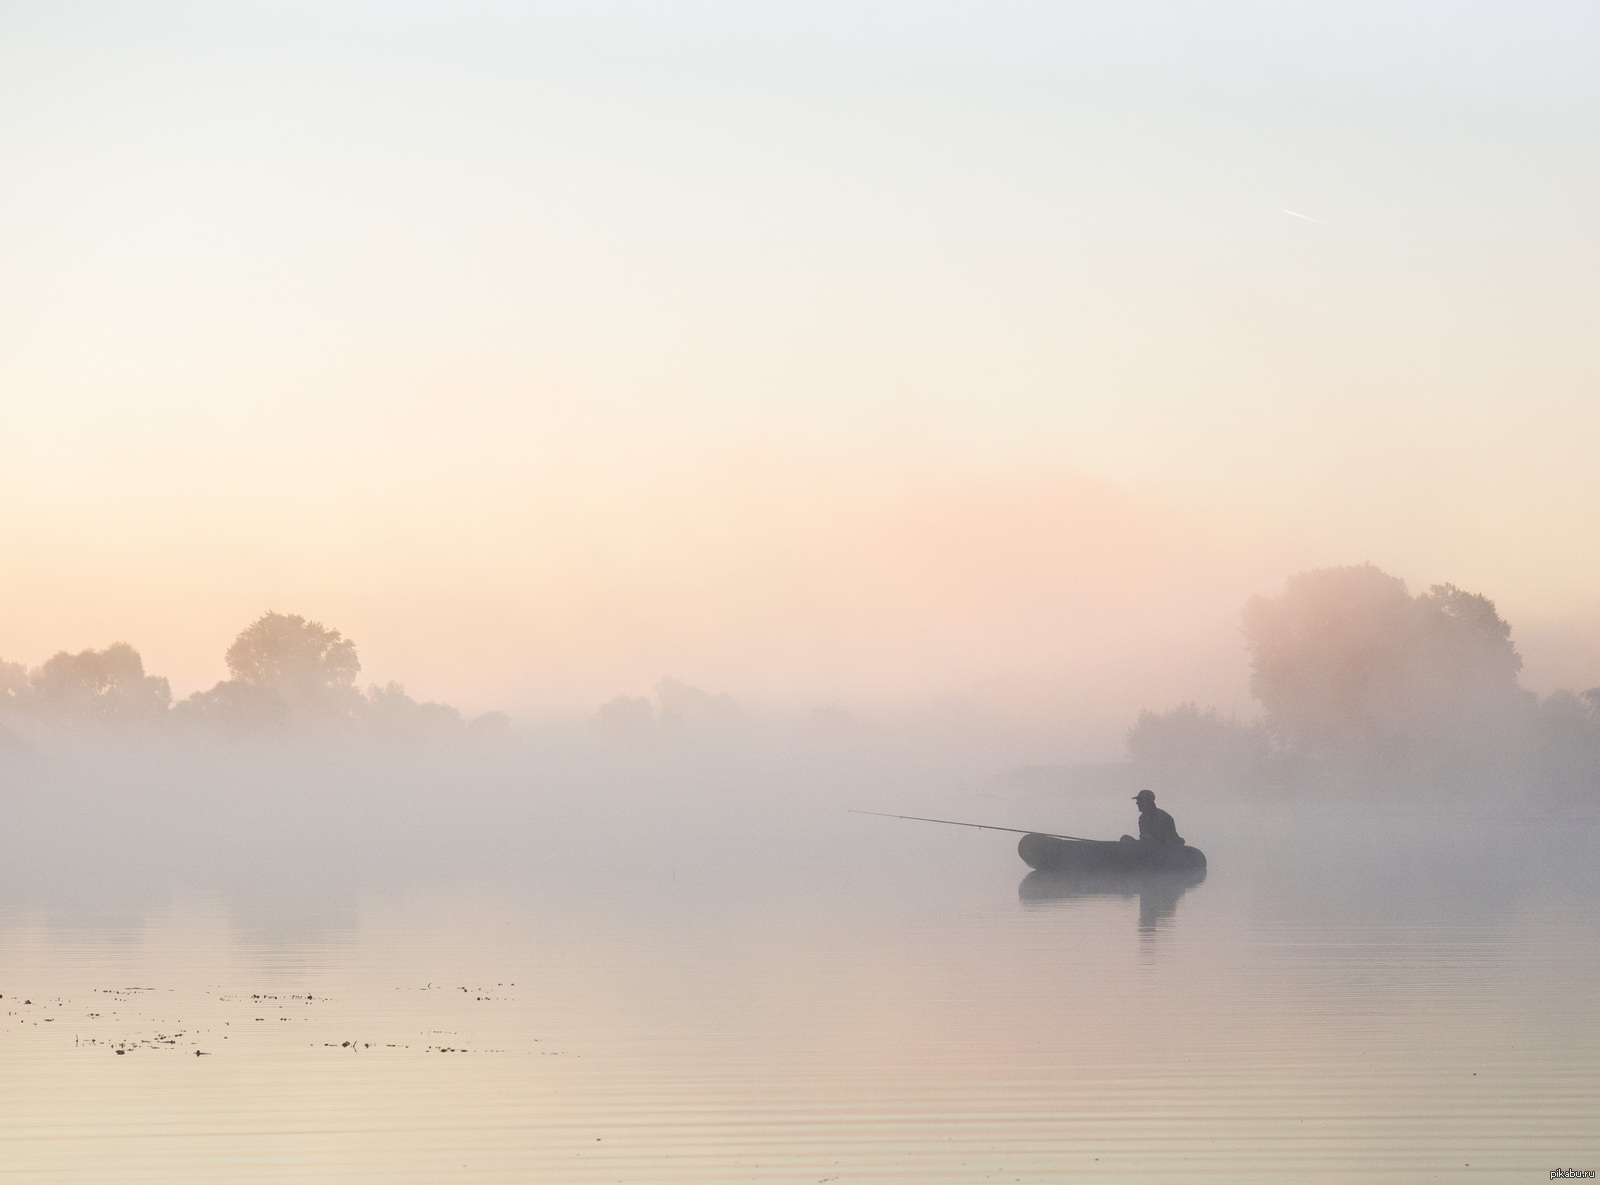 Штиль туман. Лодка в тумане. Утренний туман. Туманный рассвет. Рыбак на лодке в тумане.